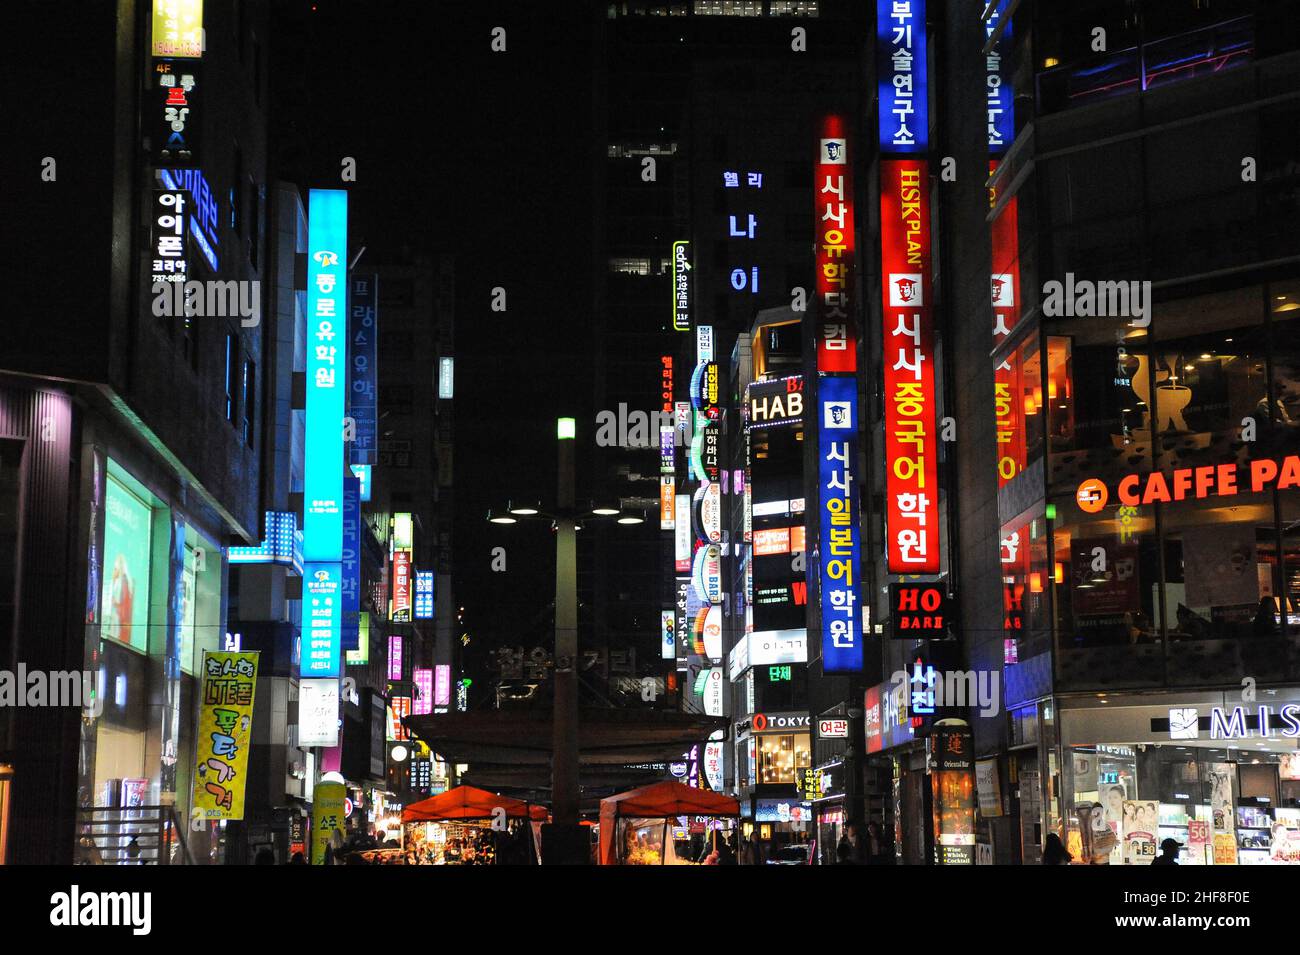 28.04.2013, Séoul, Corée du Sud, Asie - des panneaux colorés et des rues éclairées au néon du quartier animé de divertissement Insadong la nuit qui est bordée de ba Banque D'Images